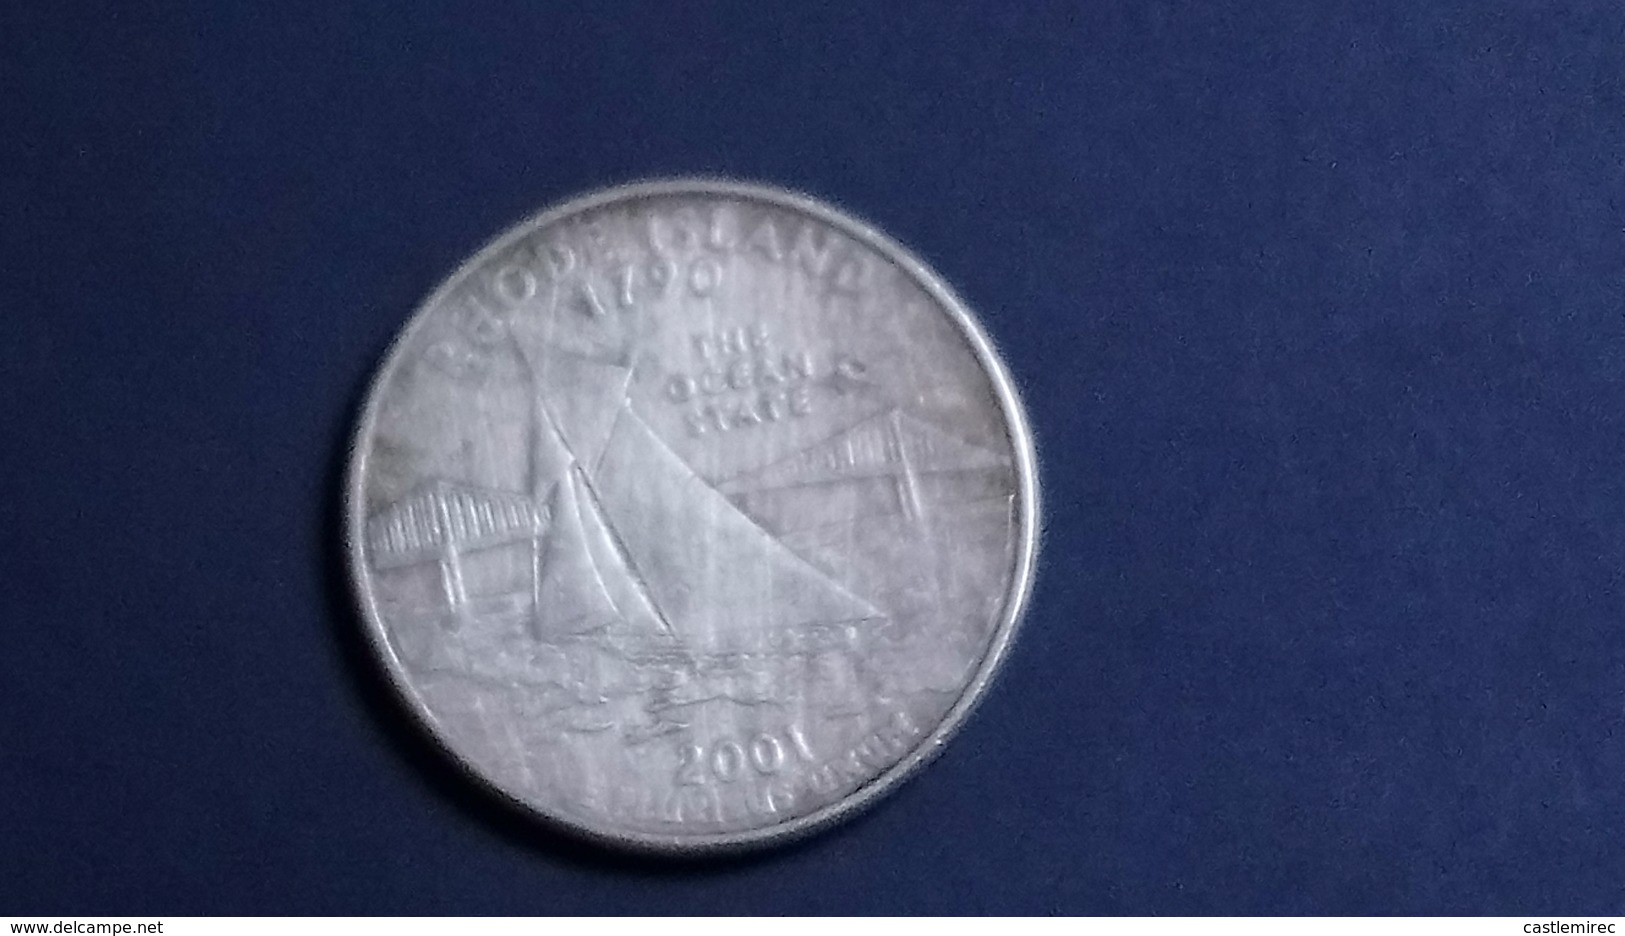 25 Cents / Quarter (Rhode Island)_km320_2001 - 1999-2009: State Quarters